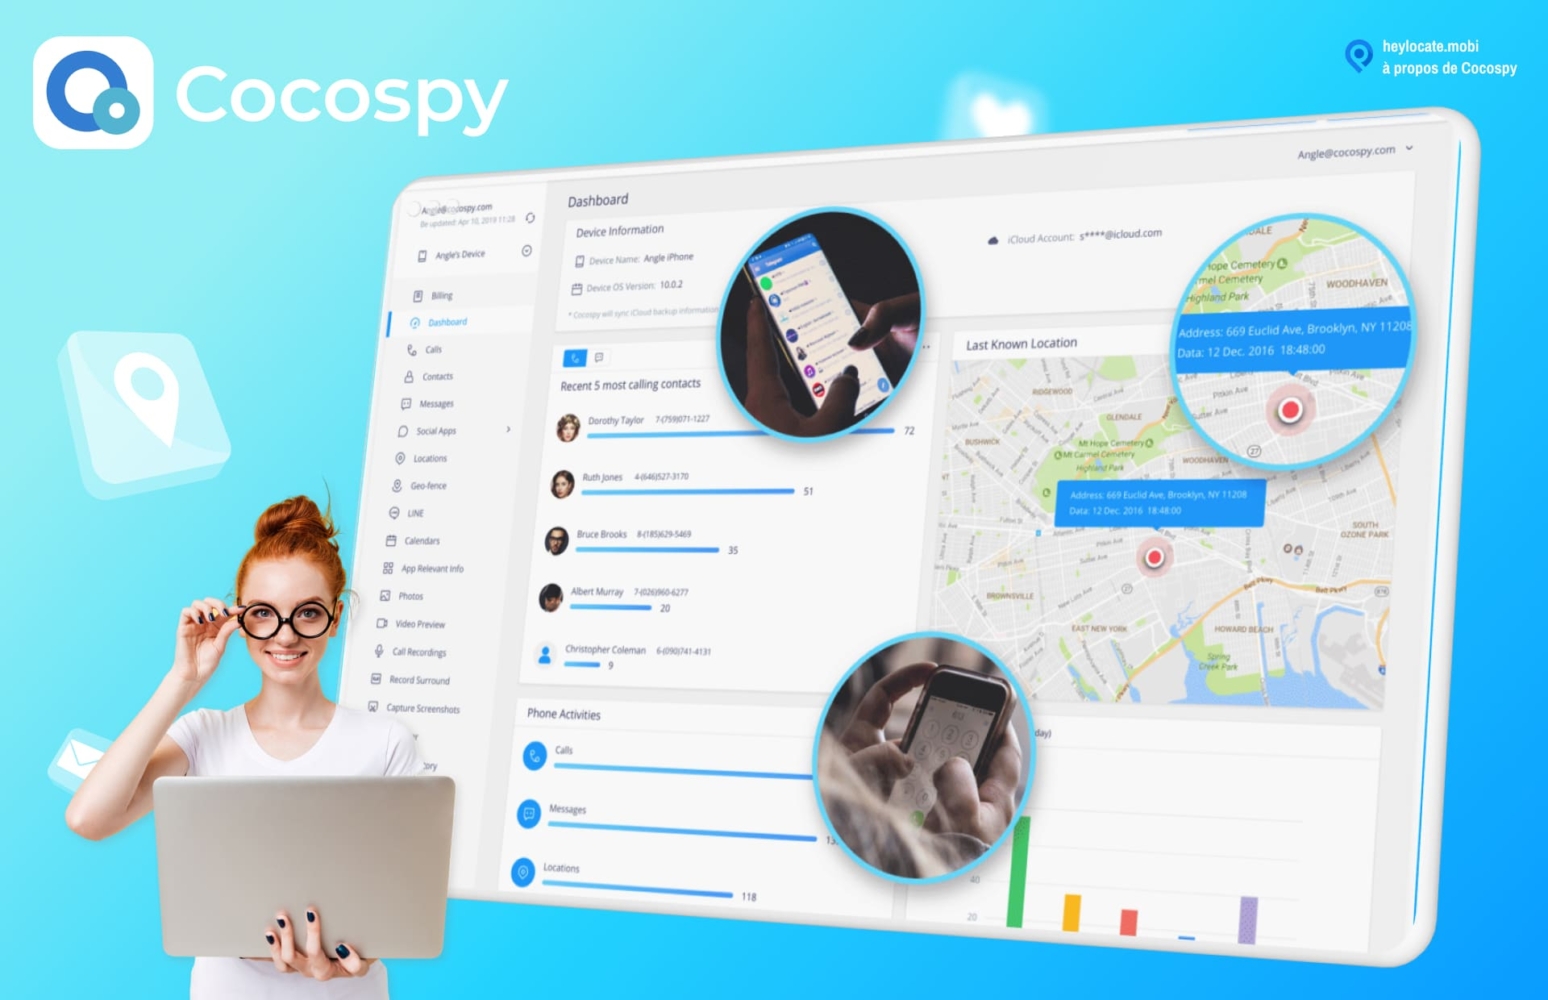 Image de Cocospy montrant une personne tenant un ordinateur portable avec le tableau de bord de Cocospy affiché. Diverses fonctionnalités telles que la localisation et les enregistrements d'appels sont visibles à l'écran. Les images encerclées montrent un gros plan de l'application utilisée sur un smartphone.